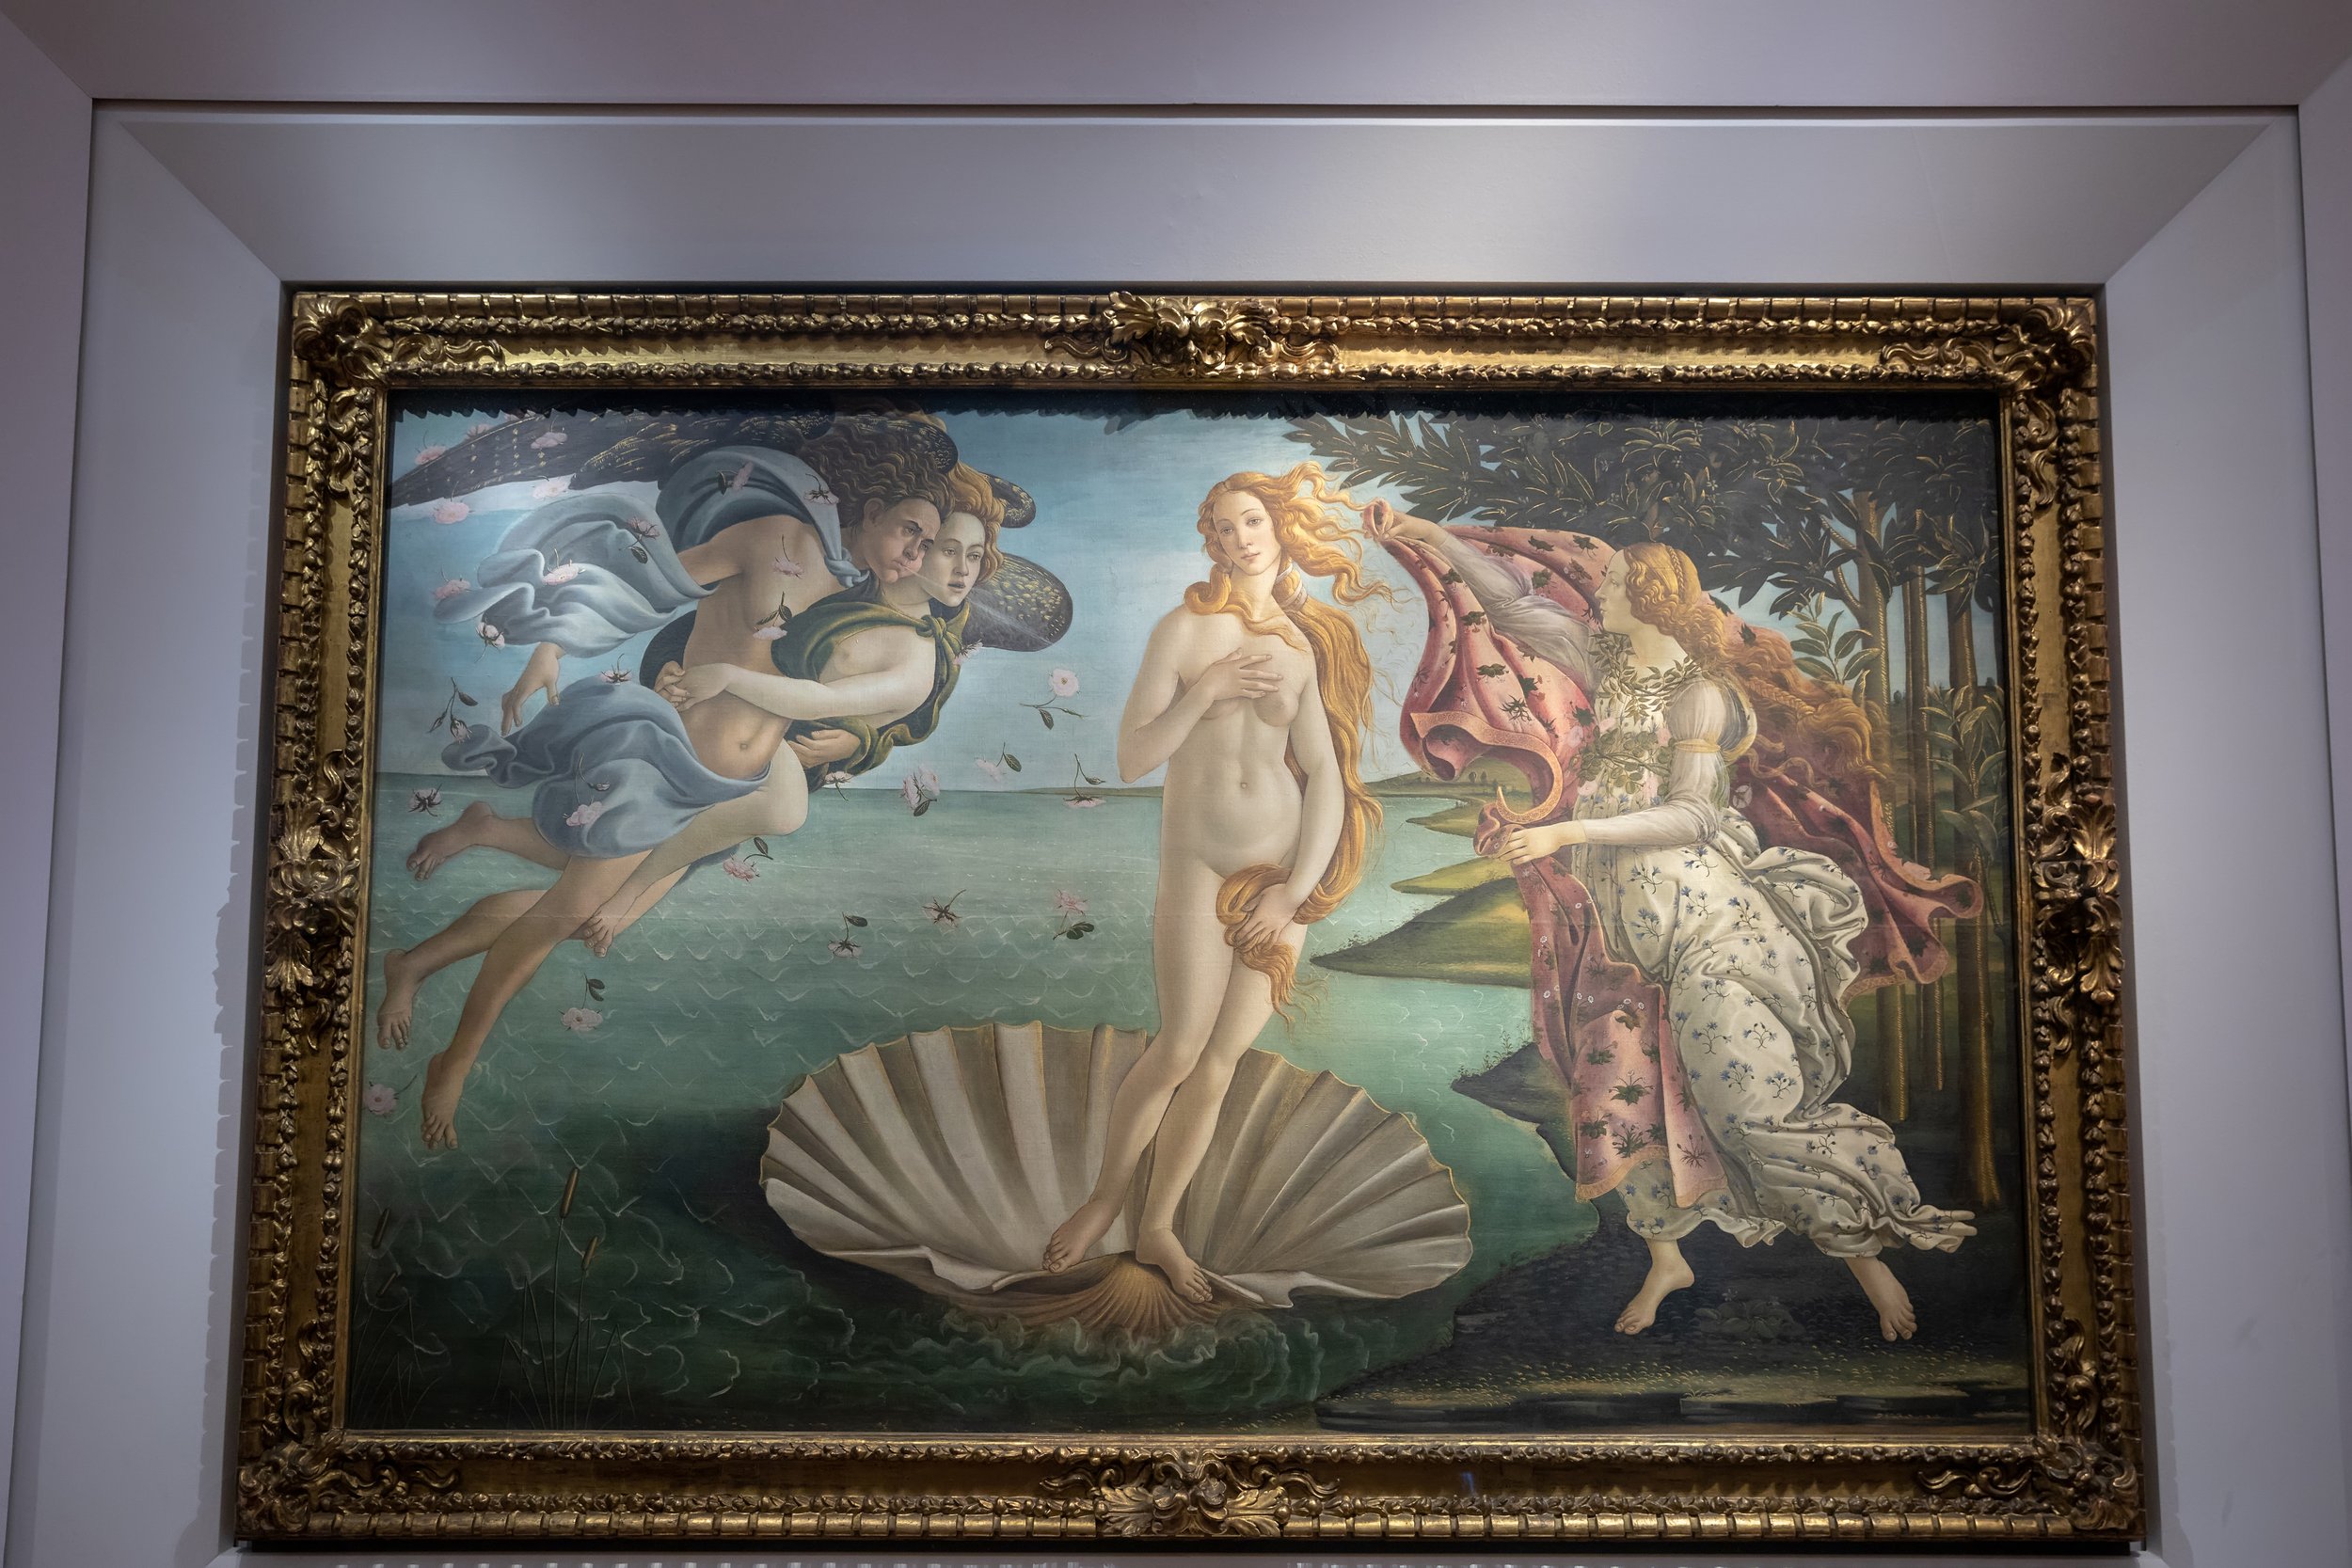 florence-italy-june-26-2018-closeup-picture-nascita-di-venere-birth-venus-is-painting-by-italian-artist-sandro-botticelli-picture-hall-uffizi-gallery-galleria-degli-uffizi.jpg